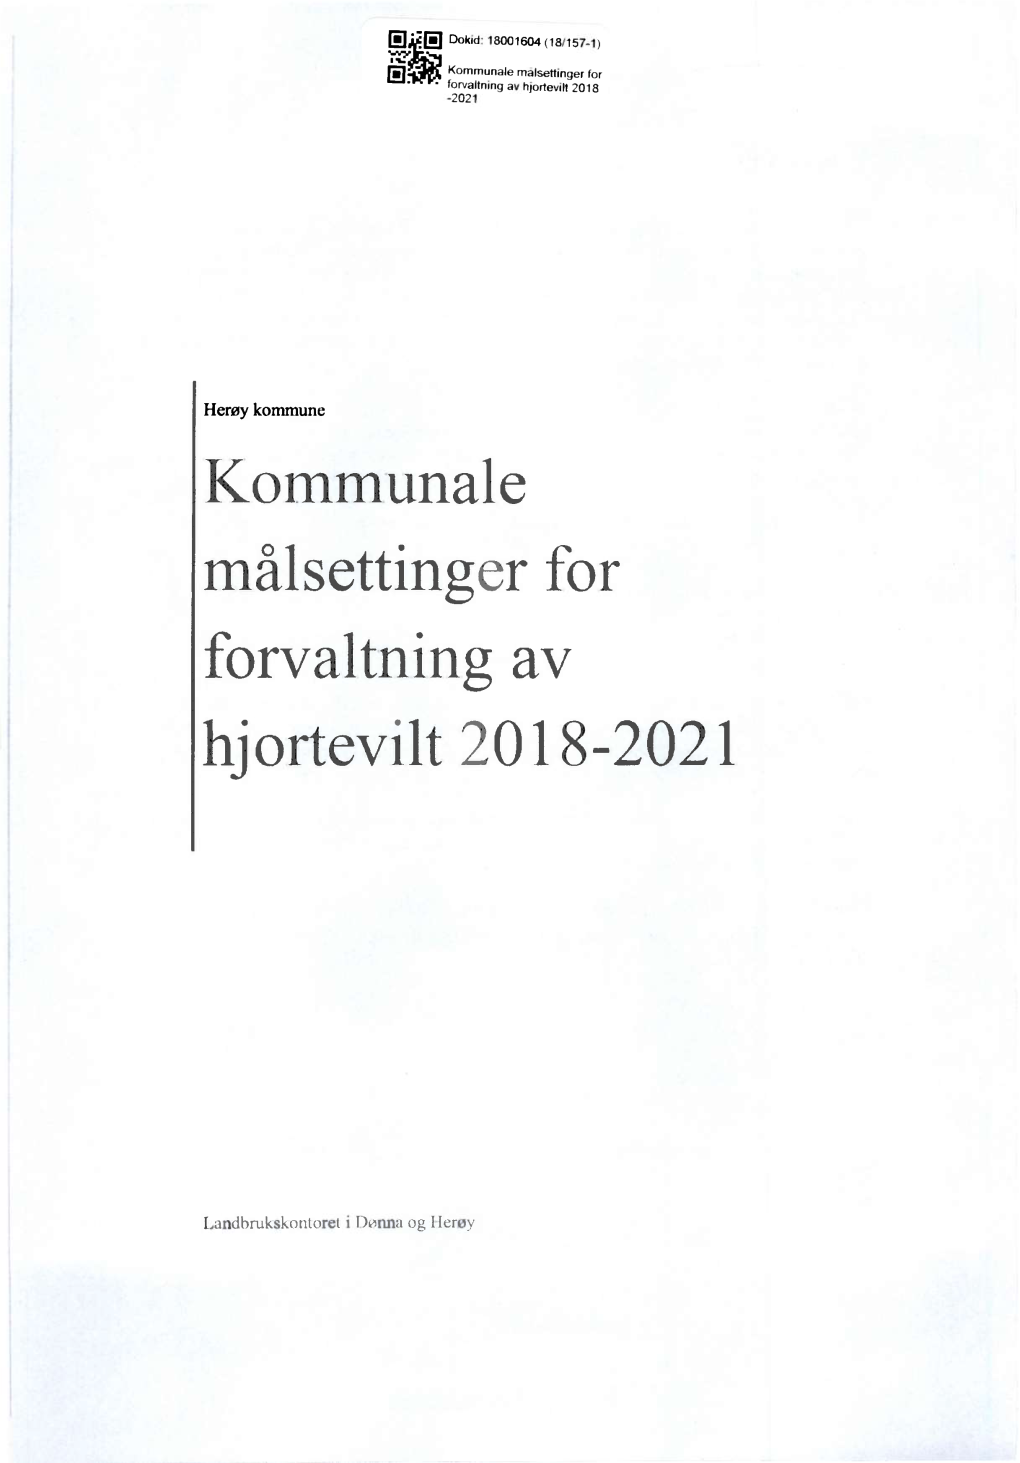 Kommunale Målsettinger for Forvaltning Av Hjortevilt 2018-2021